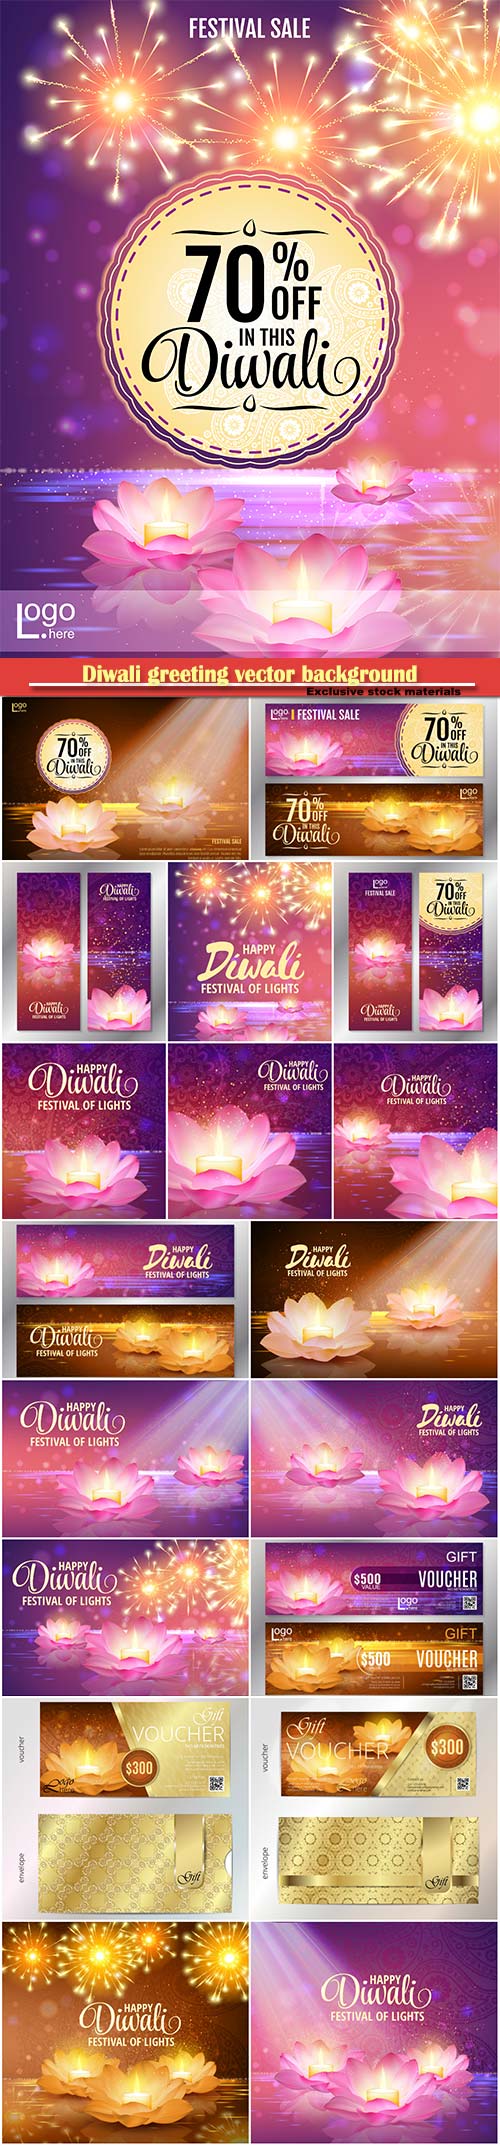 Diwali greeting vector background, lotus oil lamp